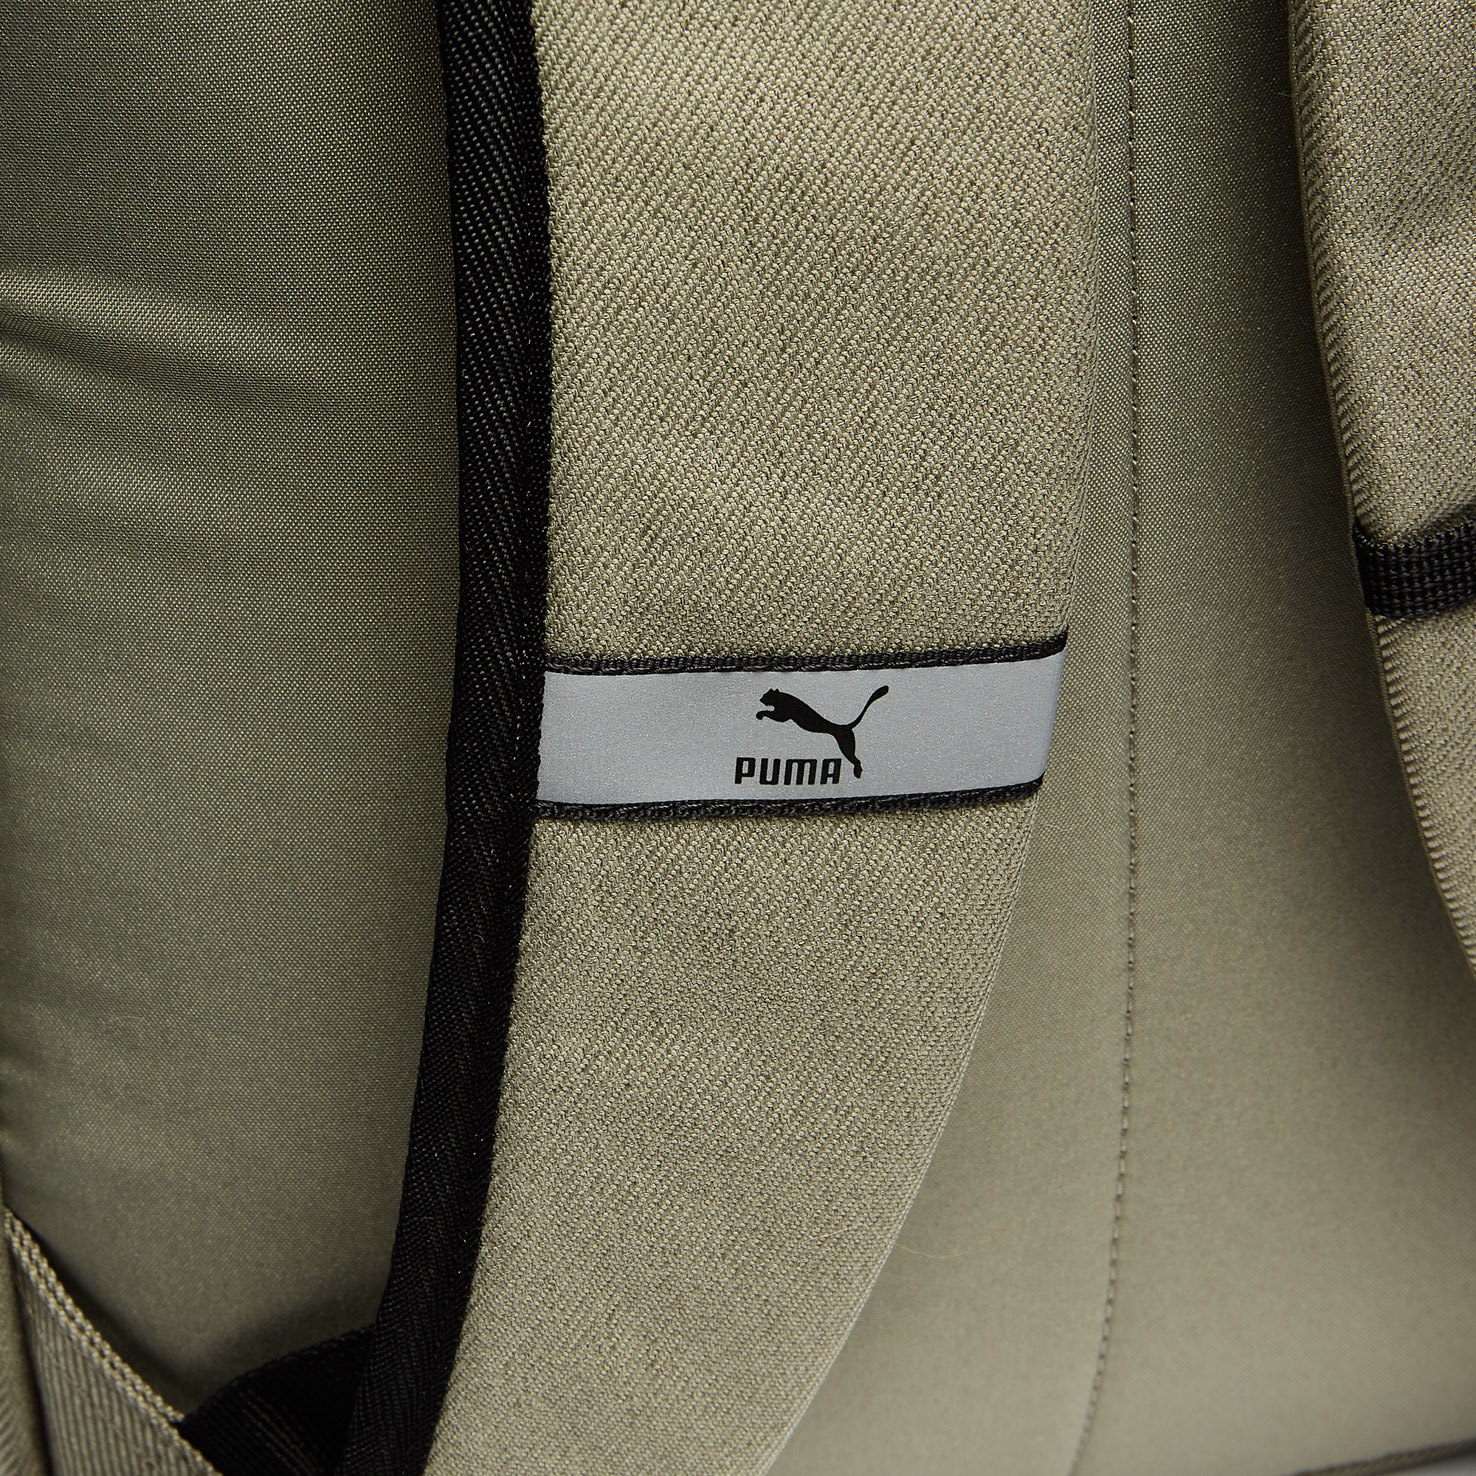 PUMA x PEANUTS Backpack PUMA, размер Один размер, цвет бежевый PM078009 - фото 5